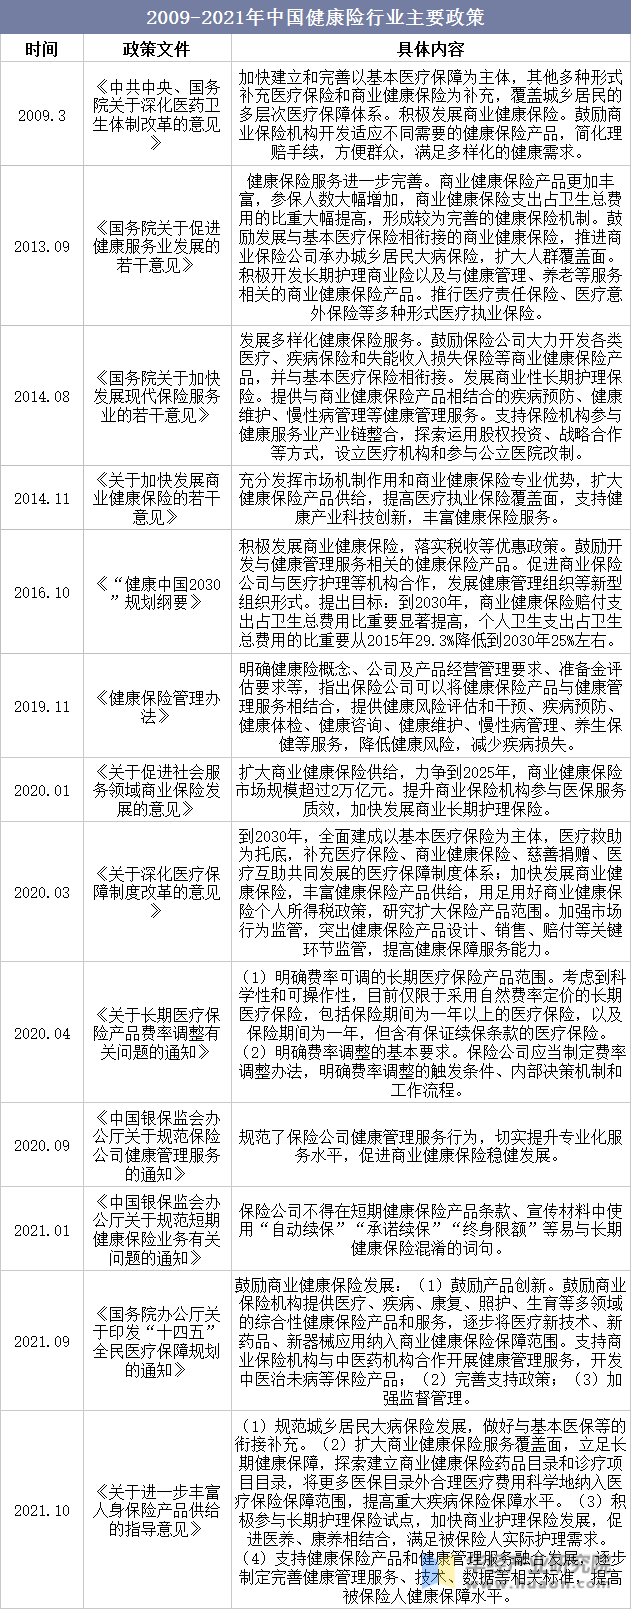 2009-2021年中国健康险行业主要政策